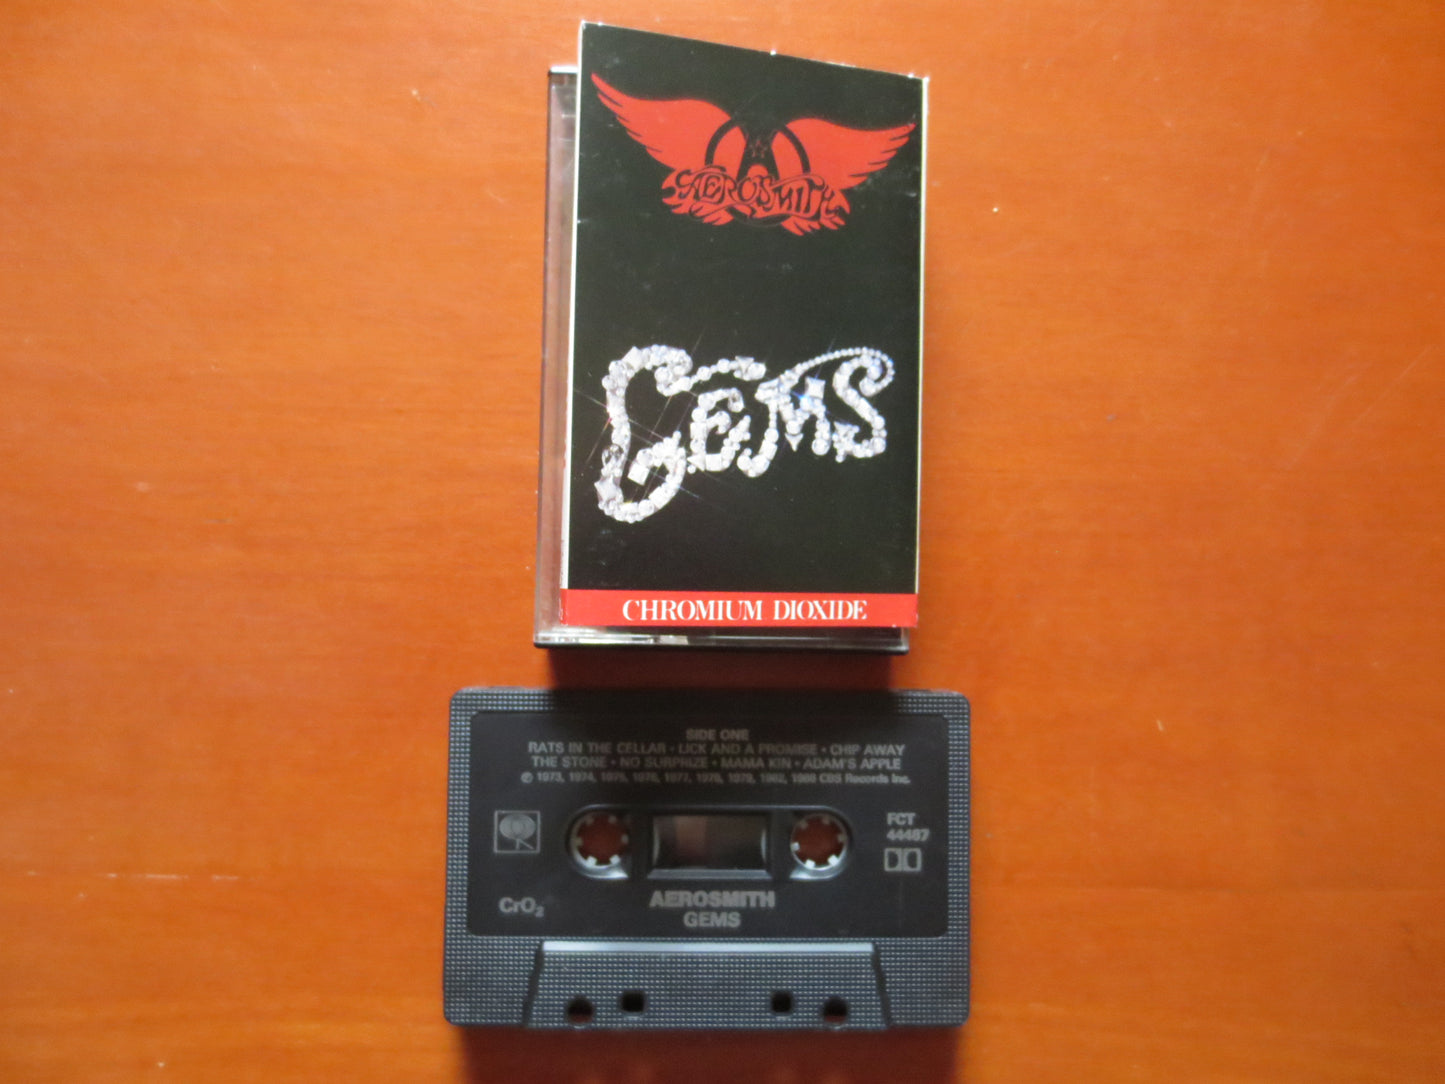 AEROSMITH Tape, GEMS Tape, AEROSMITH Album, Aerosmith Music, Aerosmith Song, Tape Cassette, Rock Cassette, 1988 Cassette